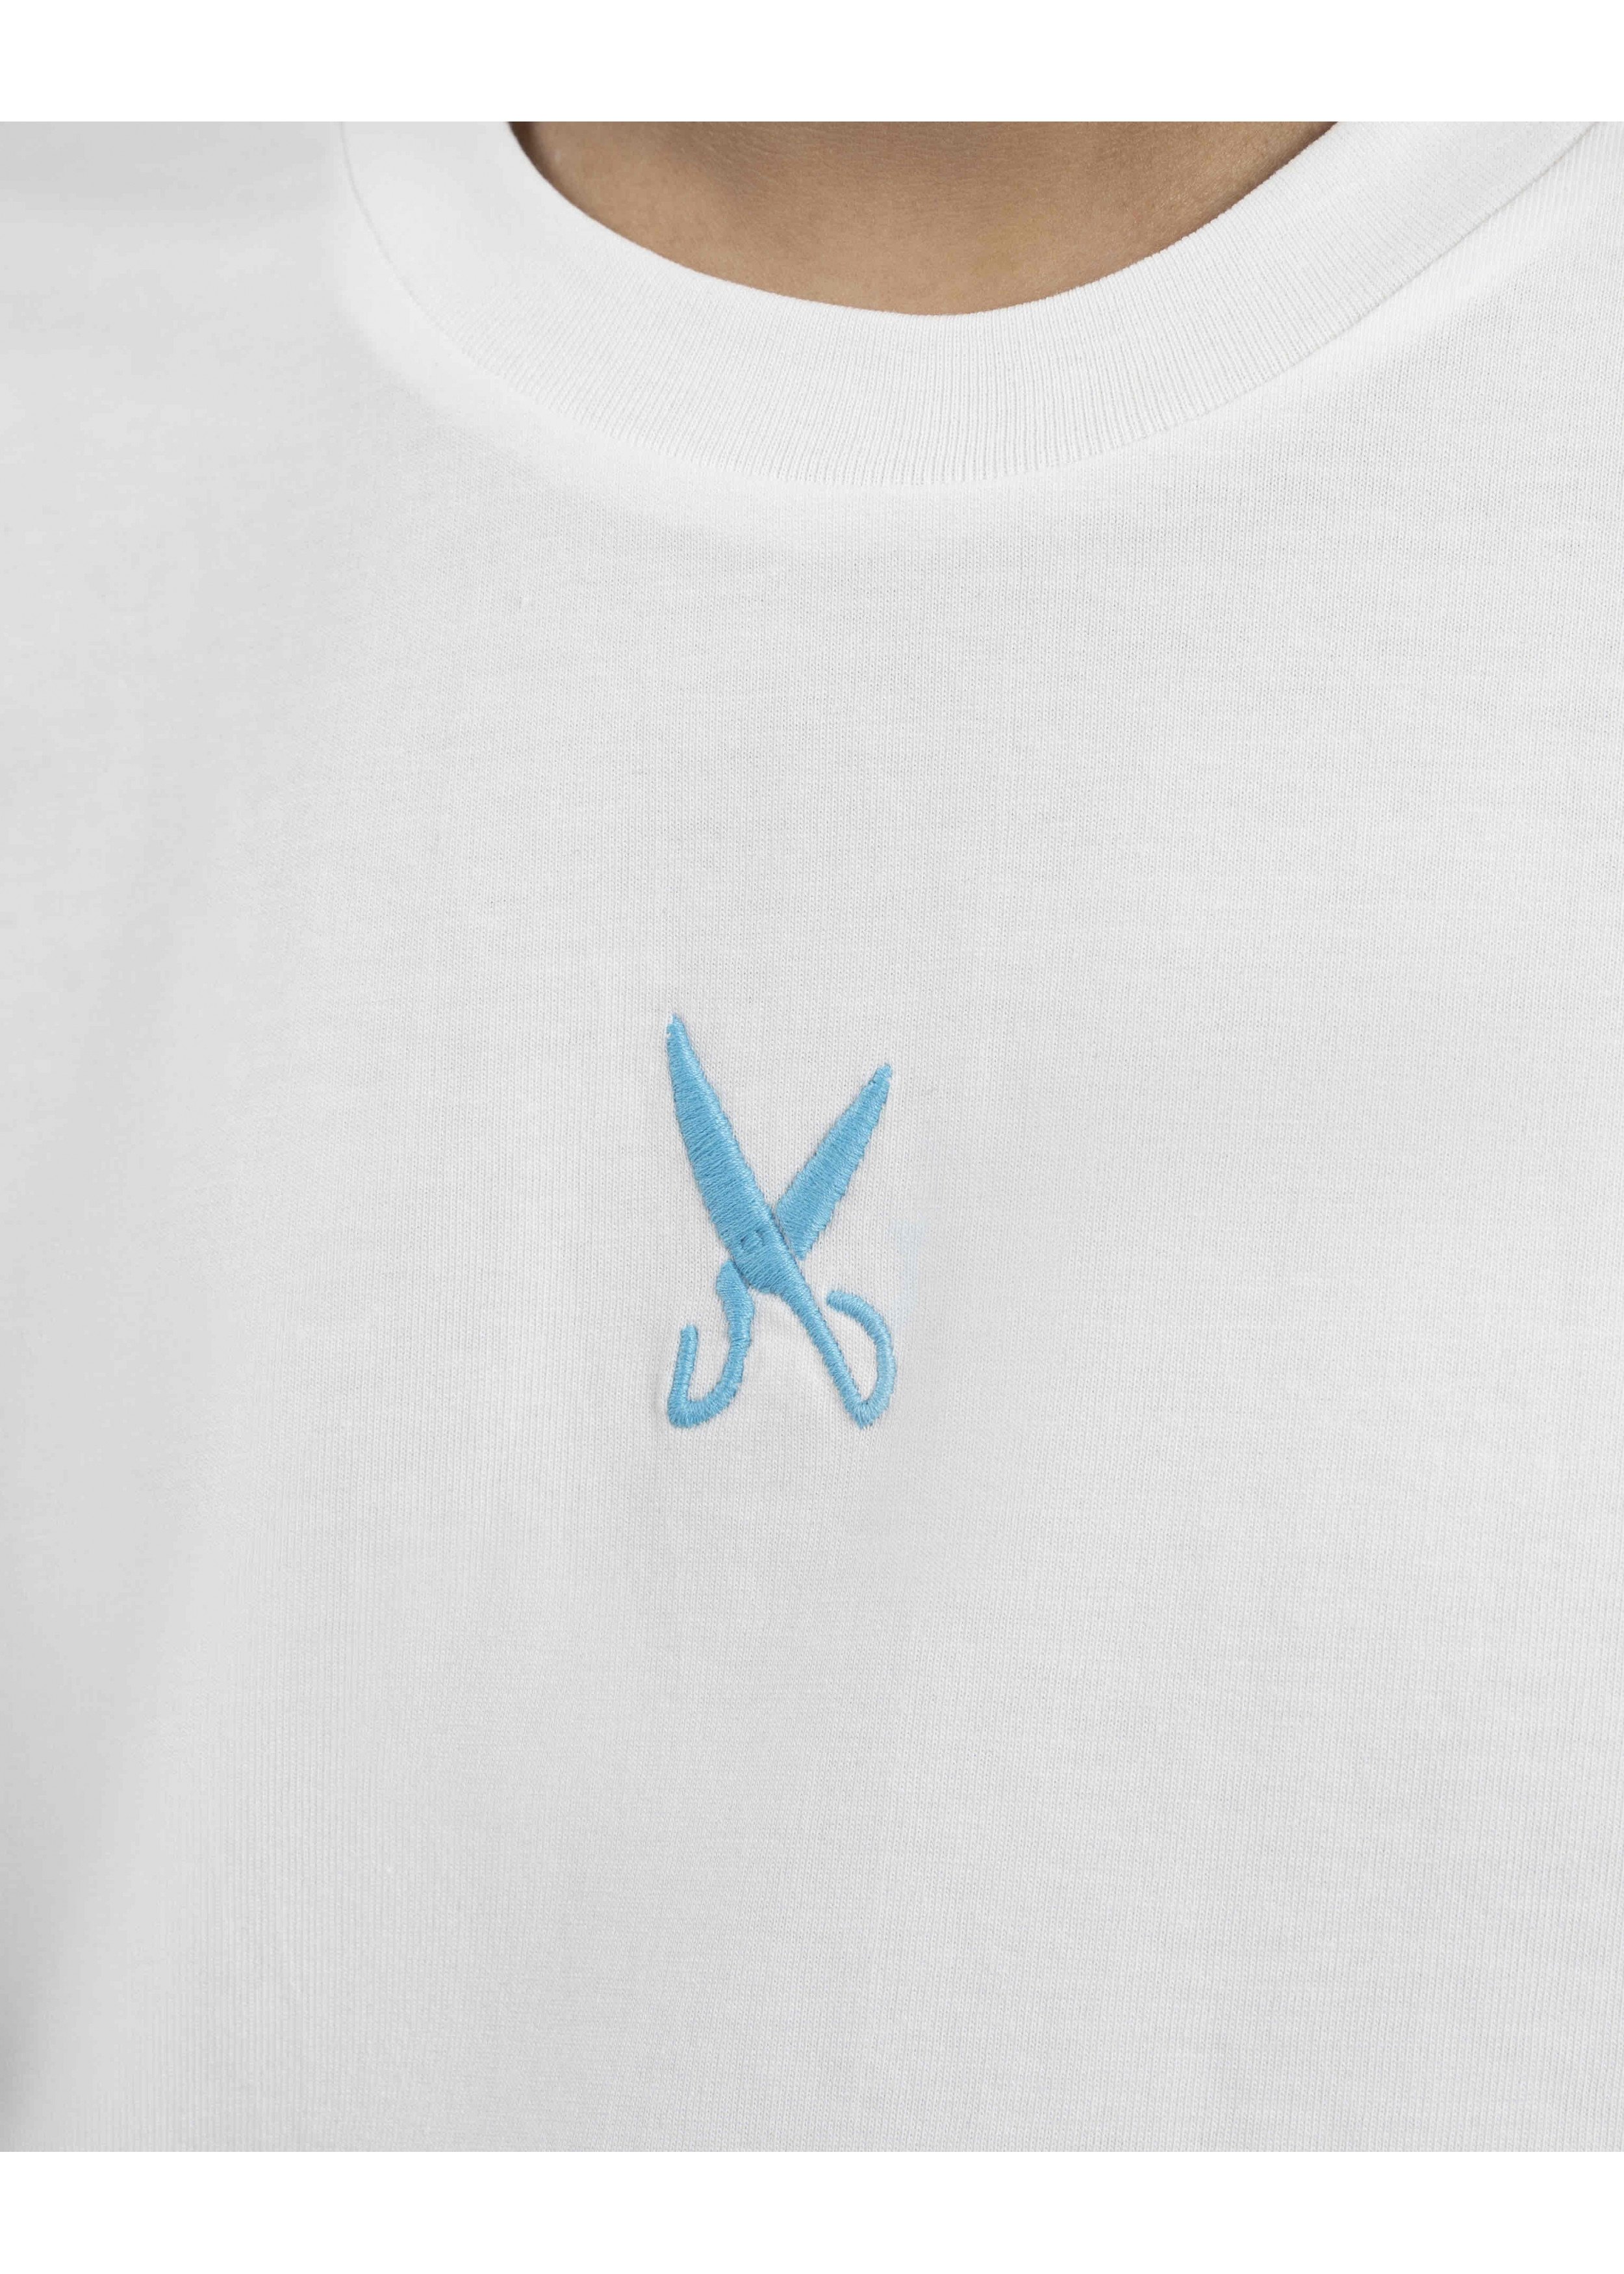 Underground Off White / Baby Blue T-shirt